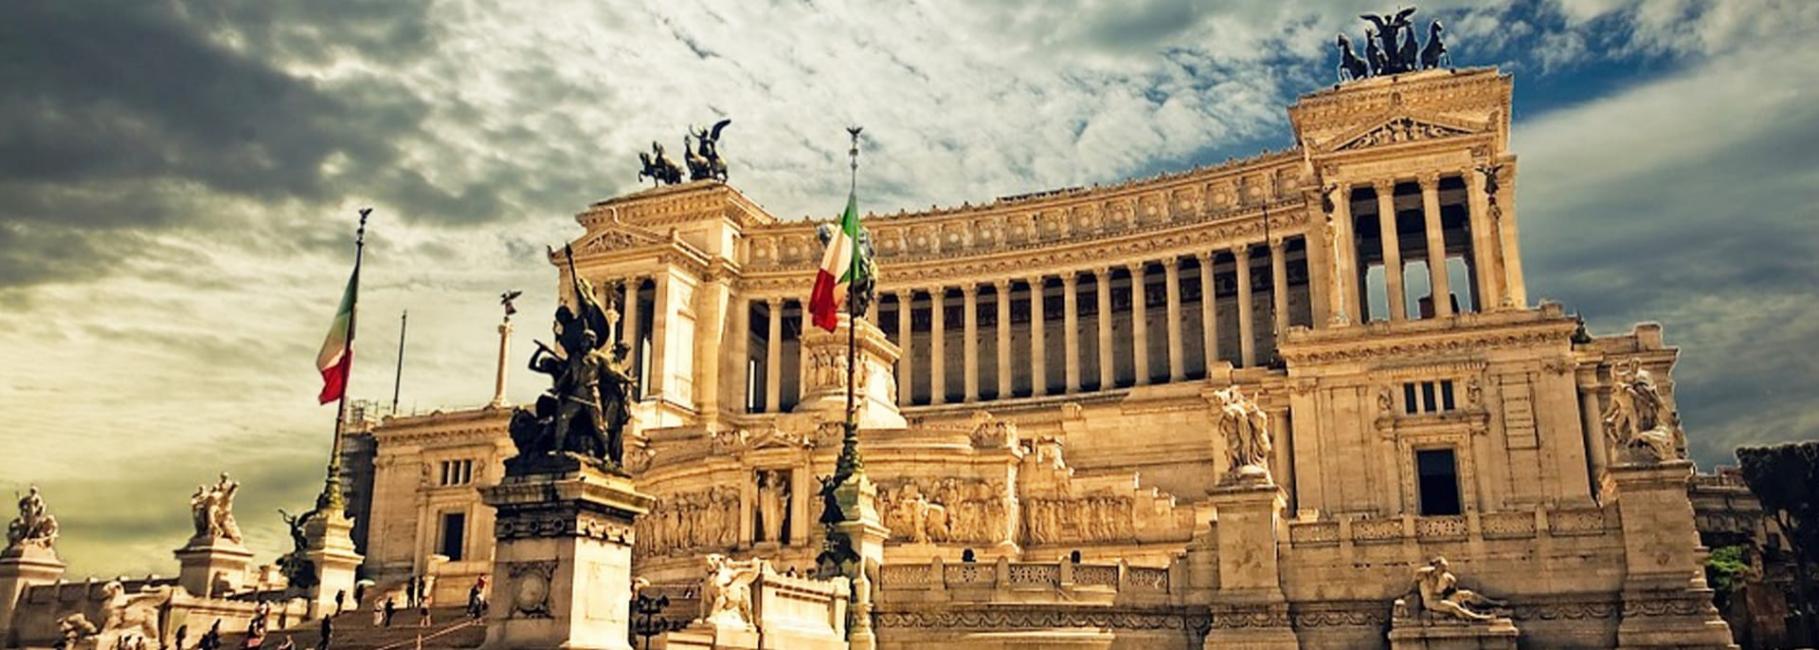 rome cultural trip header slk fe